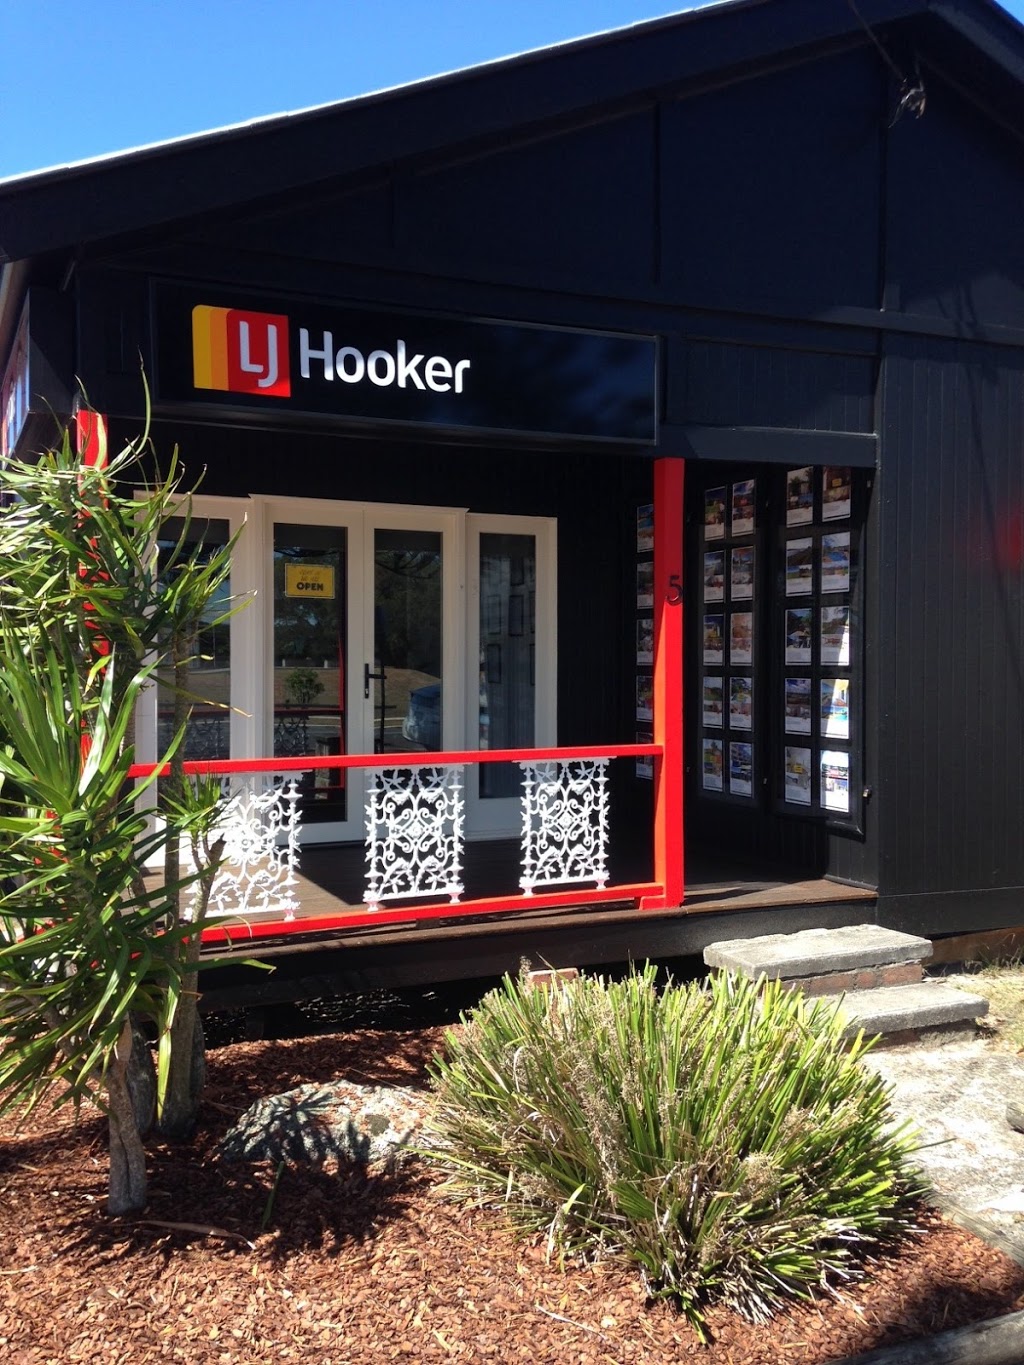 LJ Hooker Yamba | real estate agency | 5 River St, Yamba NSW 2464, Australia | 0266462202 OR +61 2 6646 2202